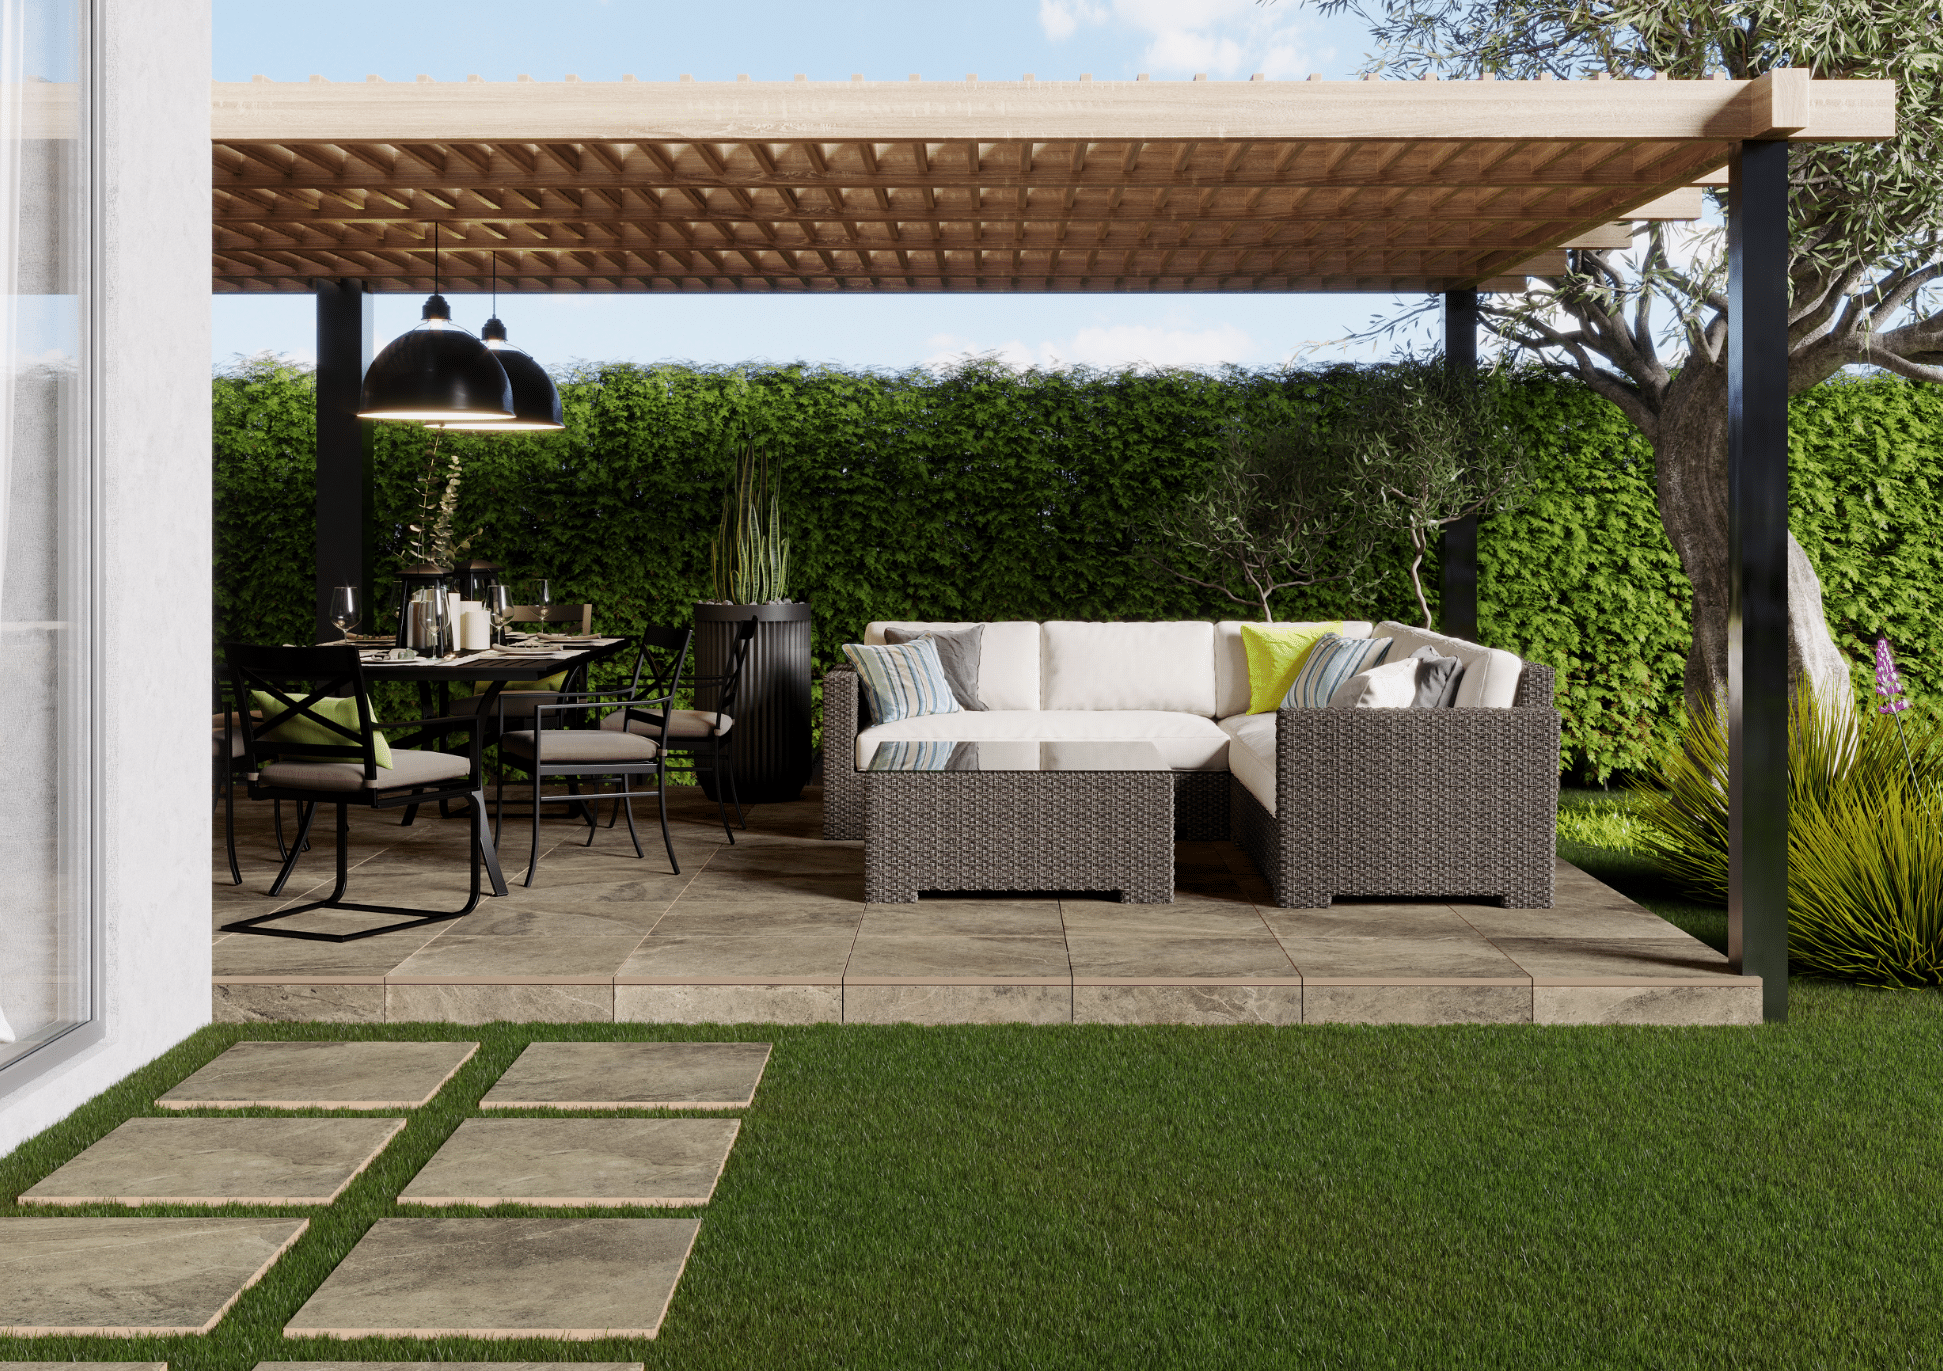 C. Bergmann zeigt einen gepflegten Garten mit Steinplatten einer überdachten Terrasse mit Fliesenboden, einer Sitzgruppe und einen gemütlichen Loungebereich mit Rattanmöbeln von Cerrad.